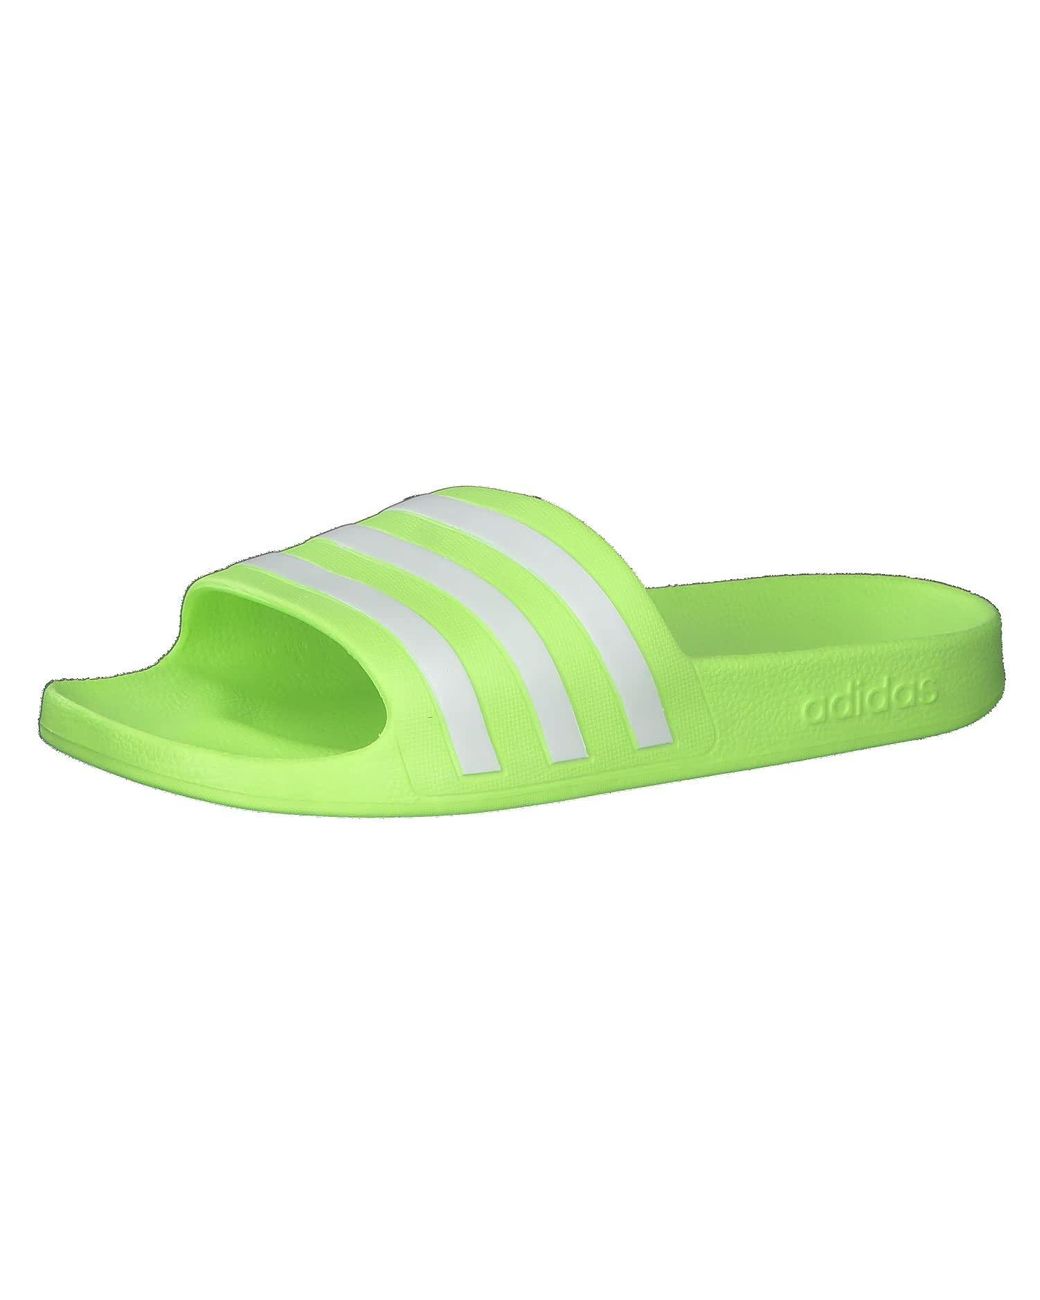 adidas Adilette Aqua Gymnastics Shoe in Green | Lyst UK